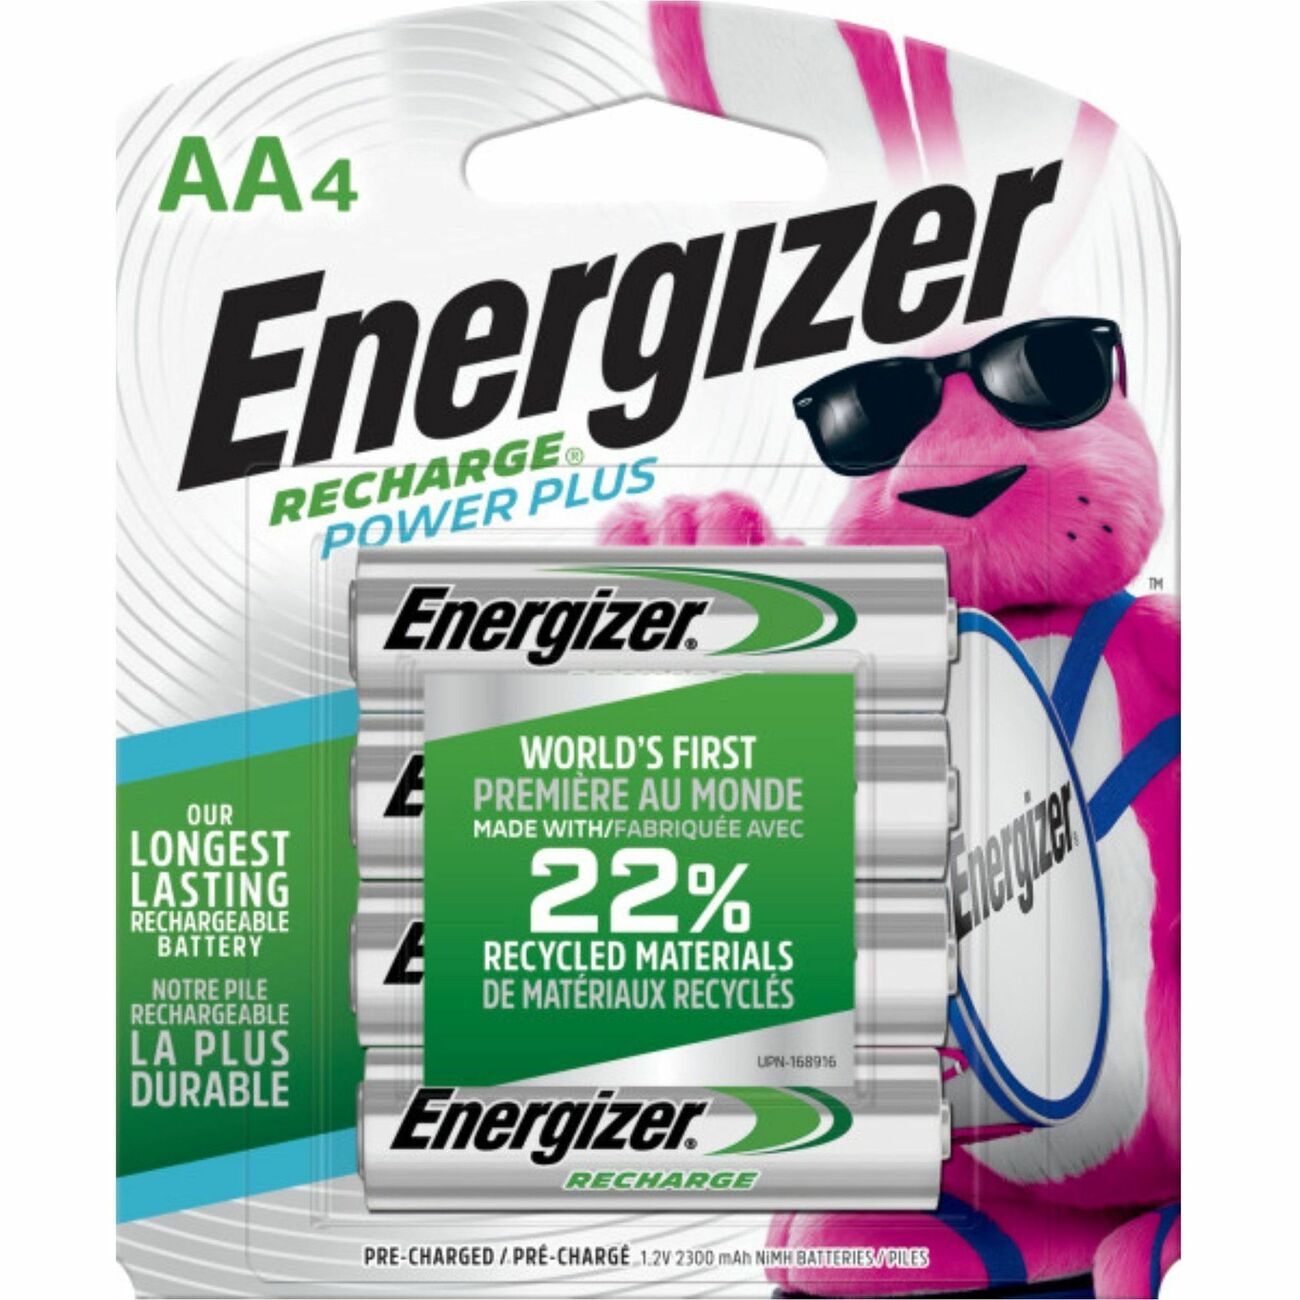 Irrigatie arm vruchten Energizer Recharge Power Plus Rechargeable AA Batteries, 4 Pack - Zerbee